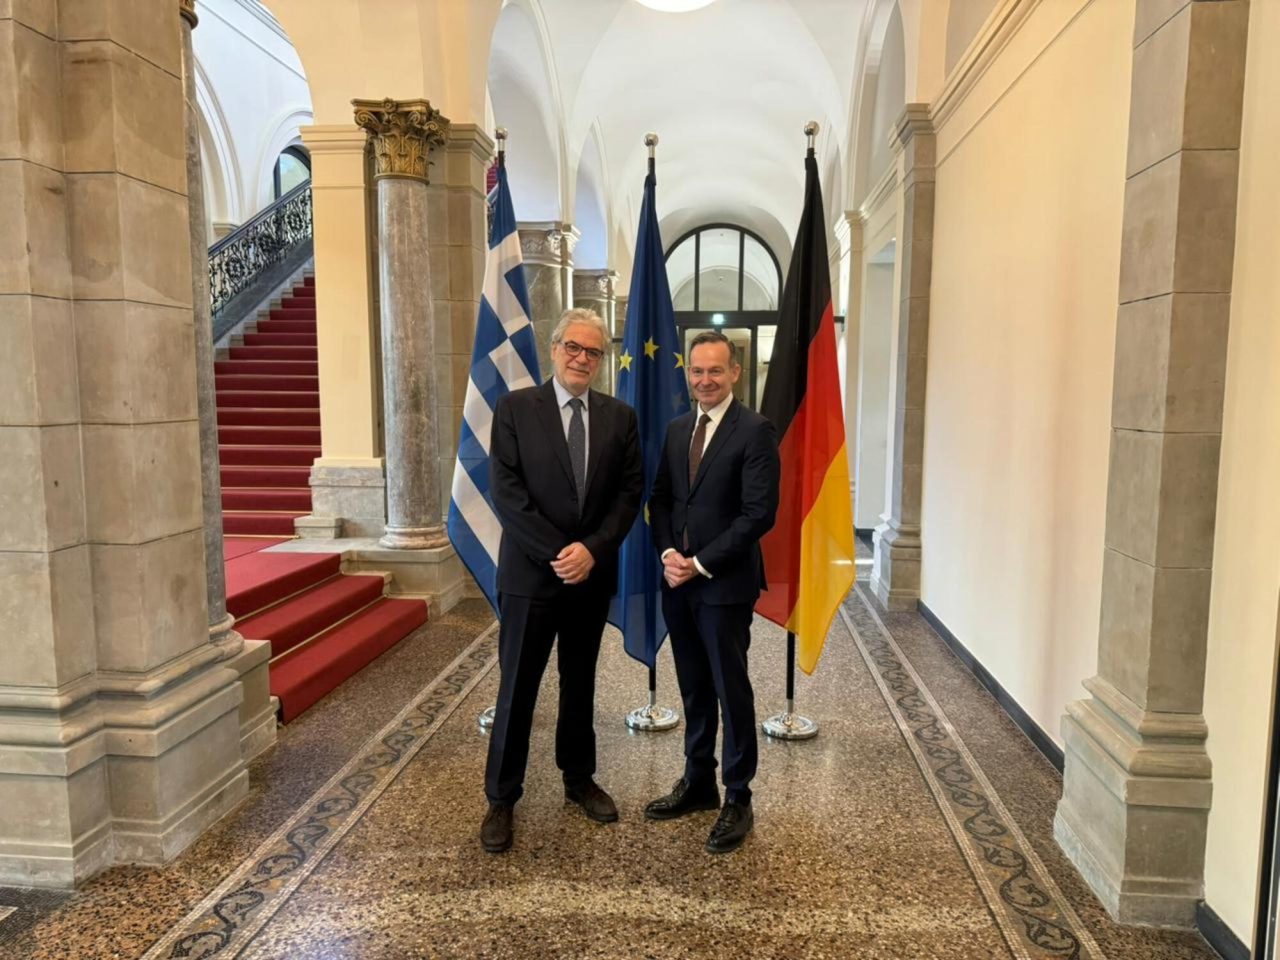 Ο Υπουργός Ναυτιλίας και Νησιωτικής Πολιτικής Χρήστος Στυλιανίδης και ο Υπουργός Ψηφιακής Διακυβέρνησης και Μεταφορών της Γερμανίας Δρ. Volker Wissing